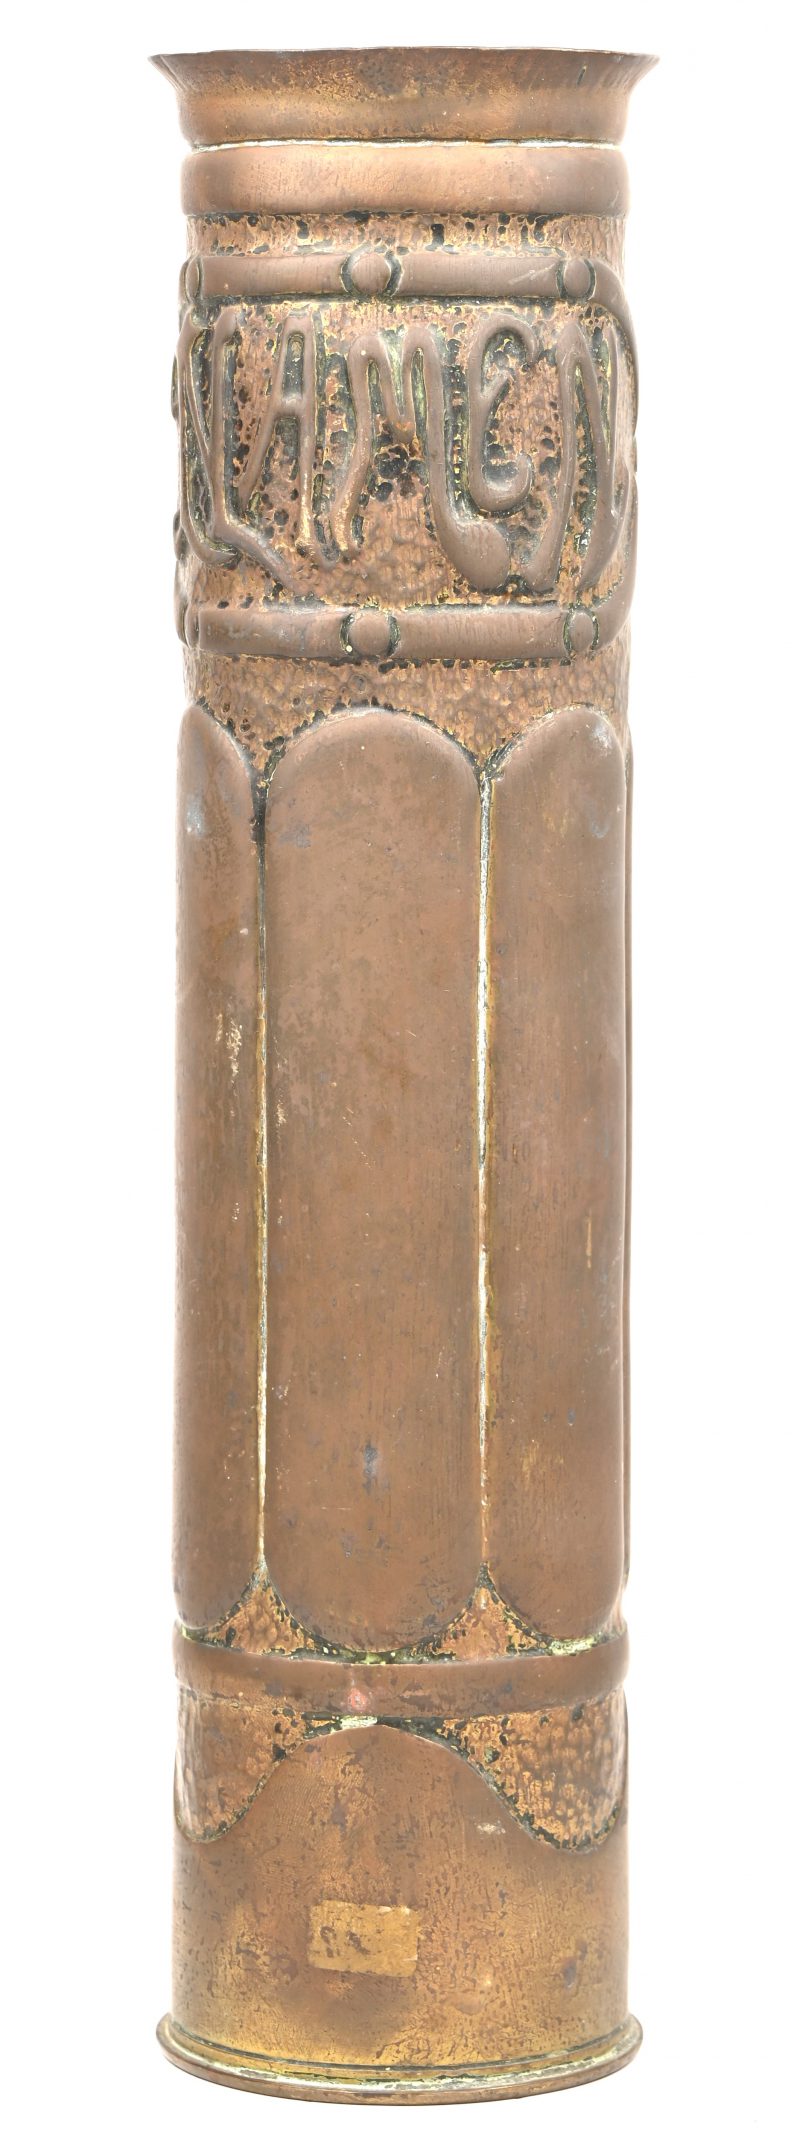 Een trench art koperen obus huls met “NAMEN” in het reliëf.